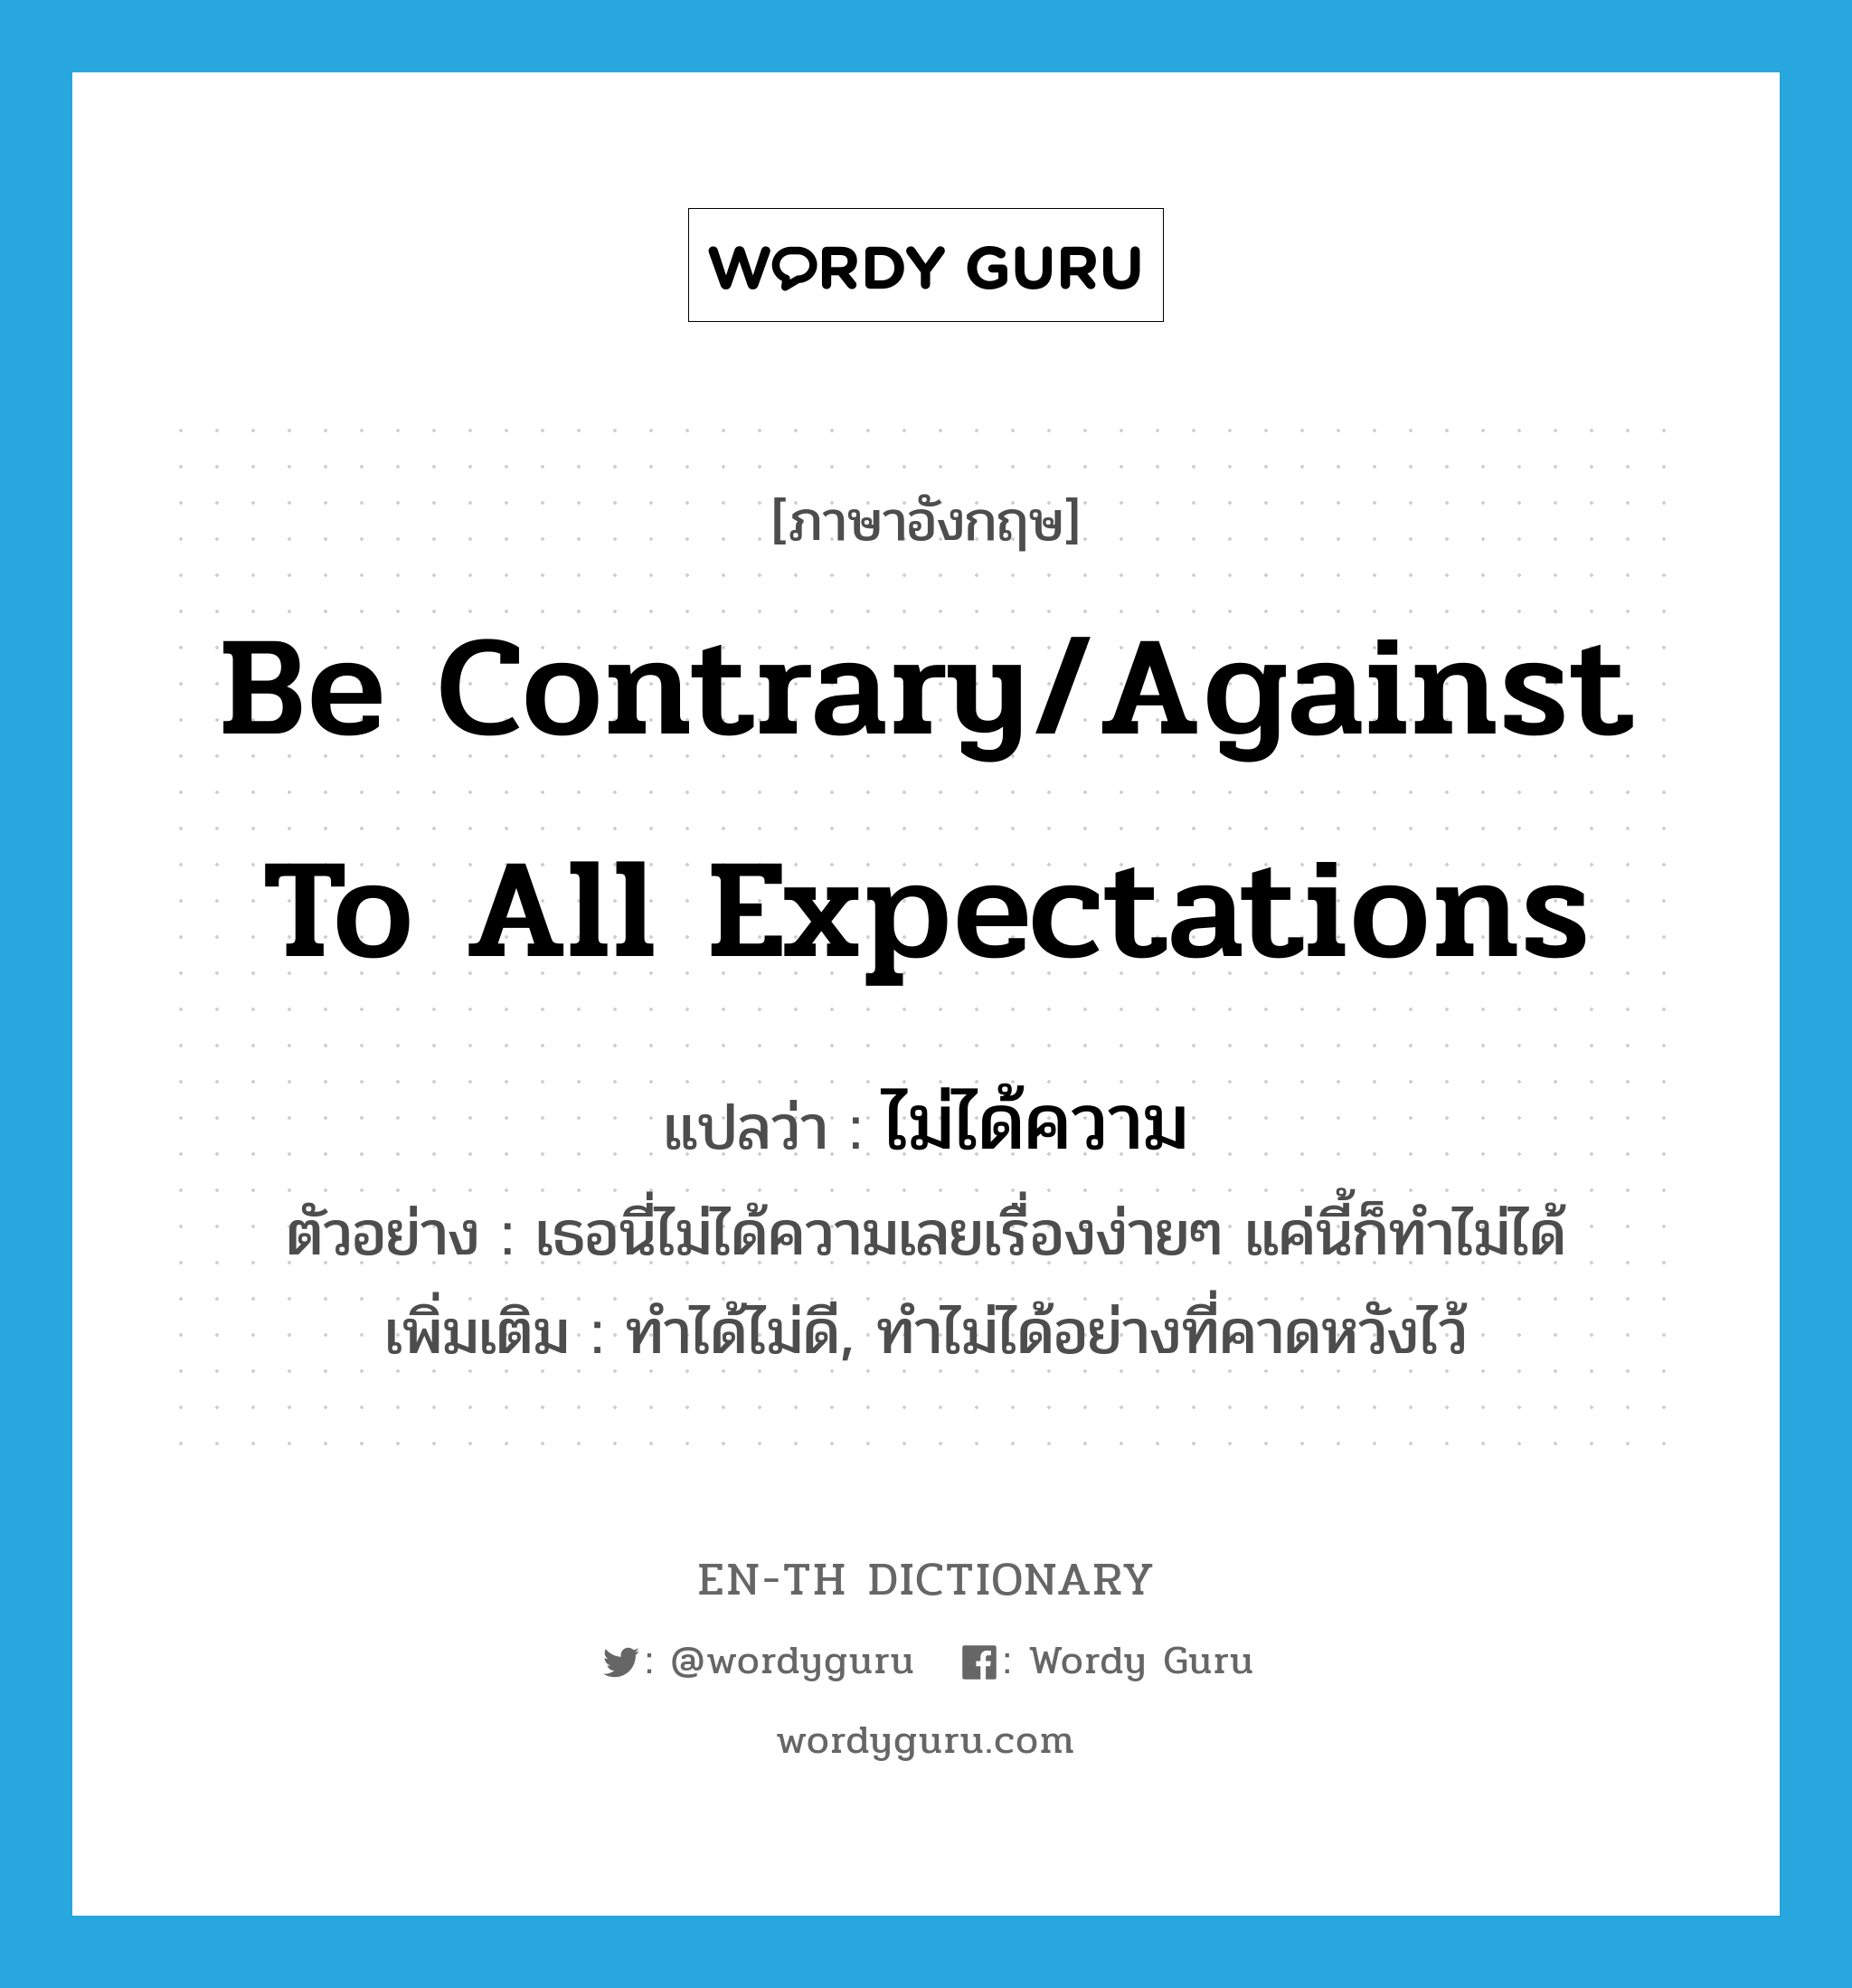 be contrary/against to all expectations แปลว่า?, คำศัพท์ภาษาอังกฤษ be contrary/against to all expectations แปลว่า ไม่ได้ความ ประเภท V ตัวอย่าง เธอนี่ไม่ได้ความเลยเรื่องง่ายๆ แค่นี้ก็ทำไม่ได้ เพิ่มเติม ทำได้ไม่ดี, ทำไม่ได้อย่างที่คาดหวังไว้ หมวด V